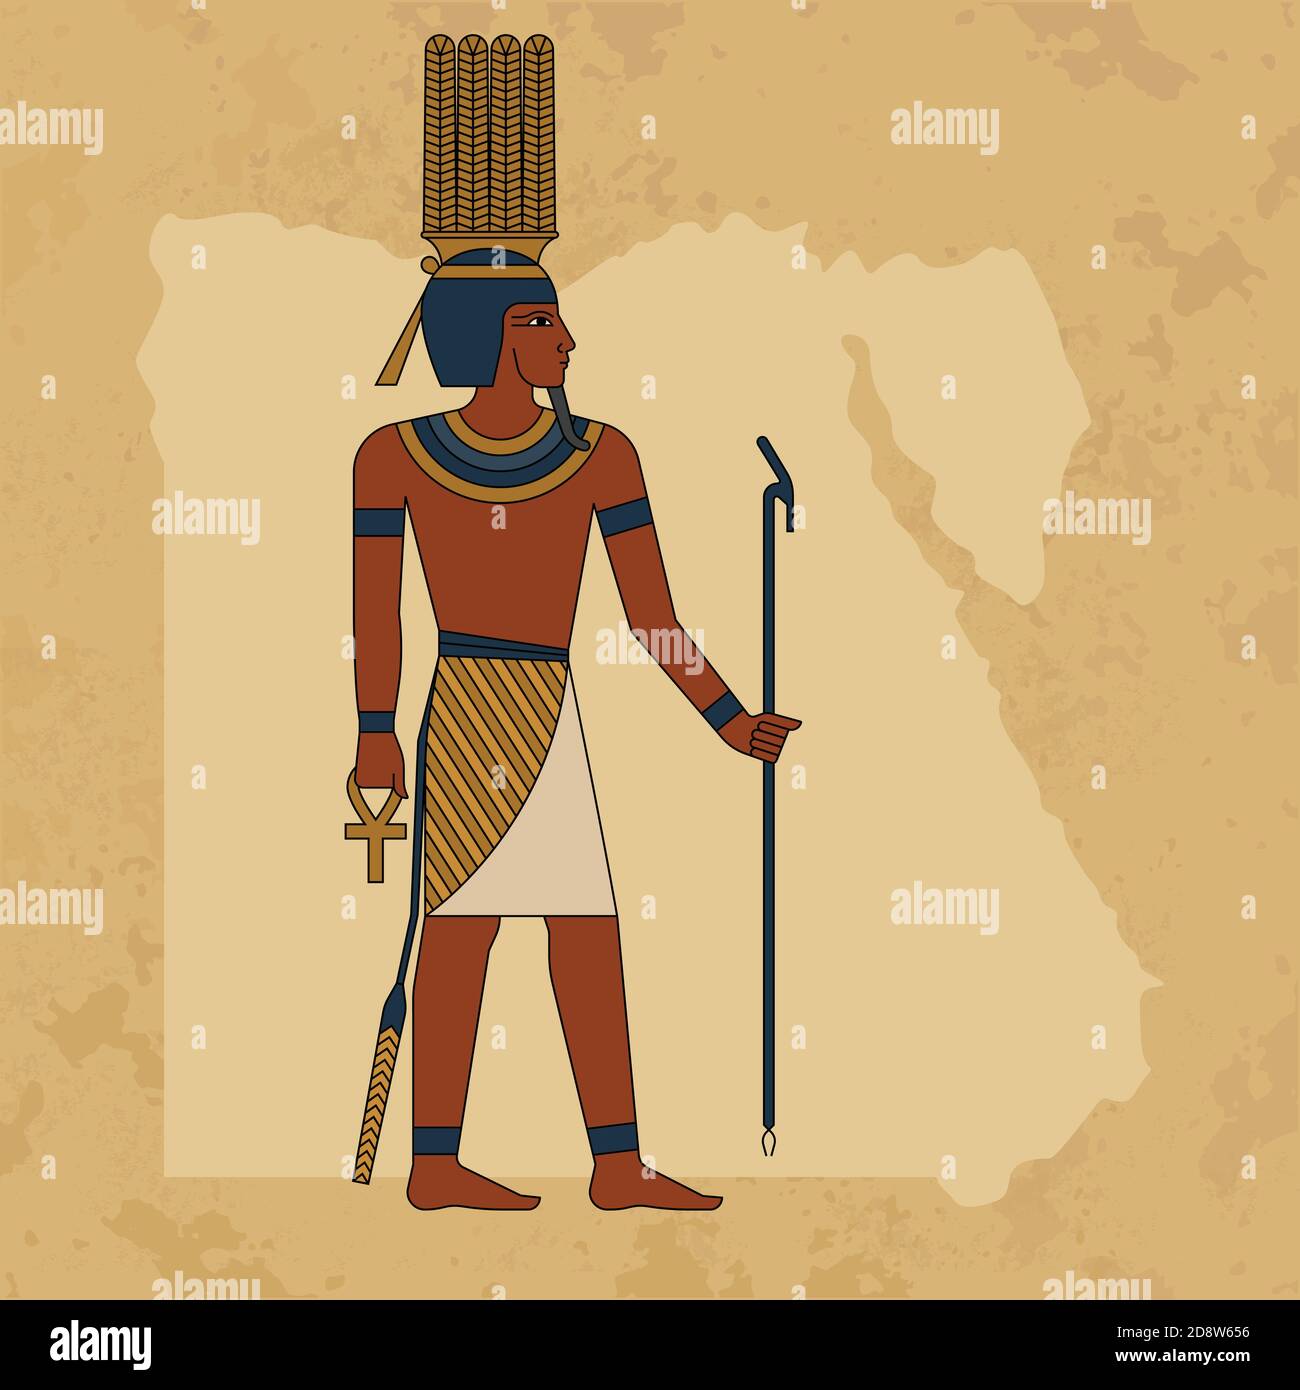 L'ancien dieu égyptien Anhur peint sur fond de carte de l'Égypte et d'un papyrus. SPE 10 Illustration de Vecteur